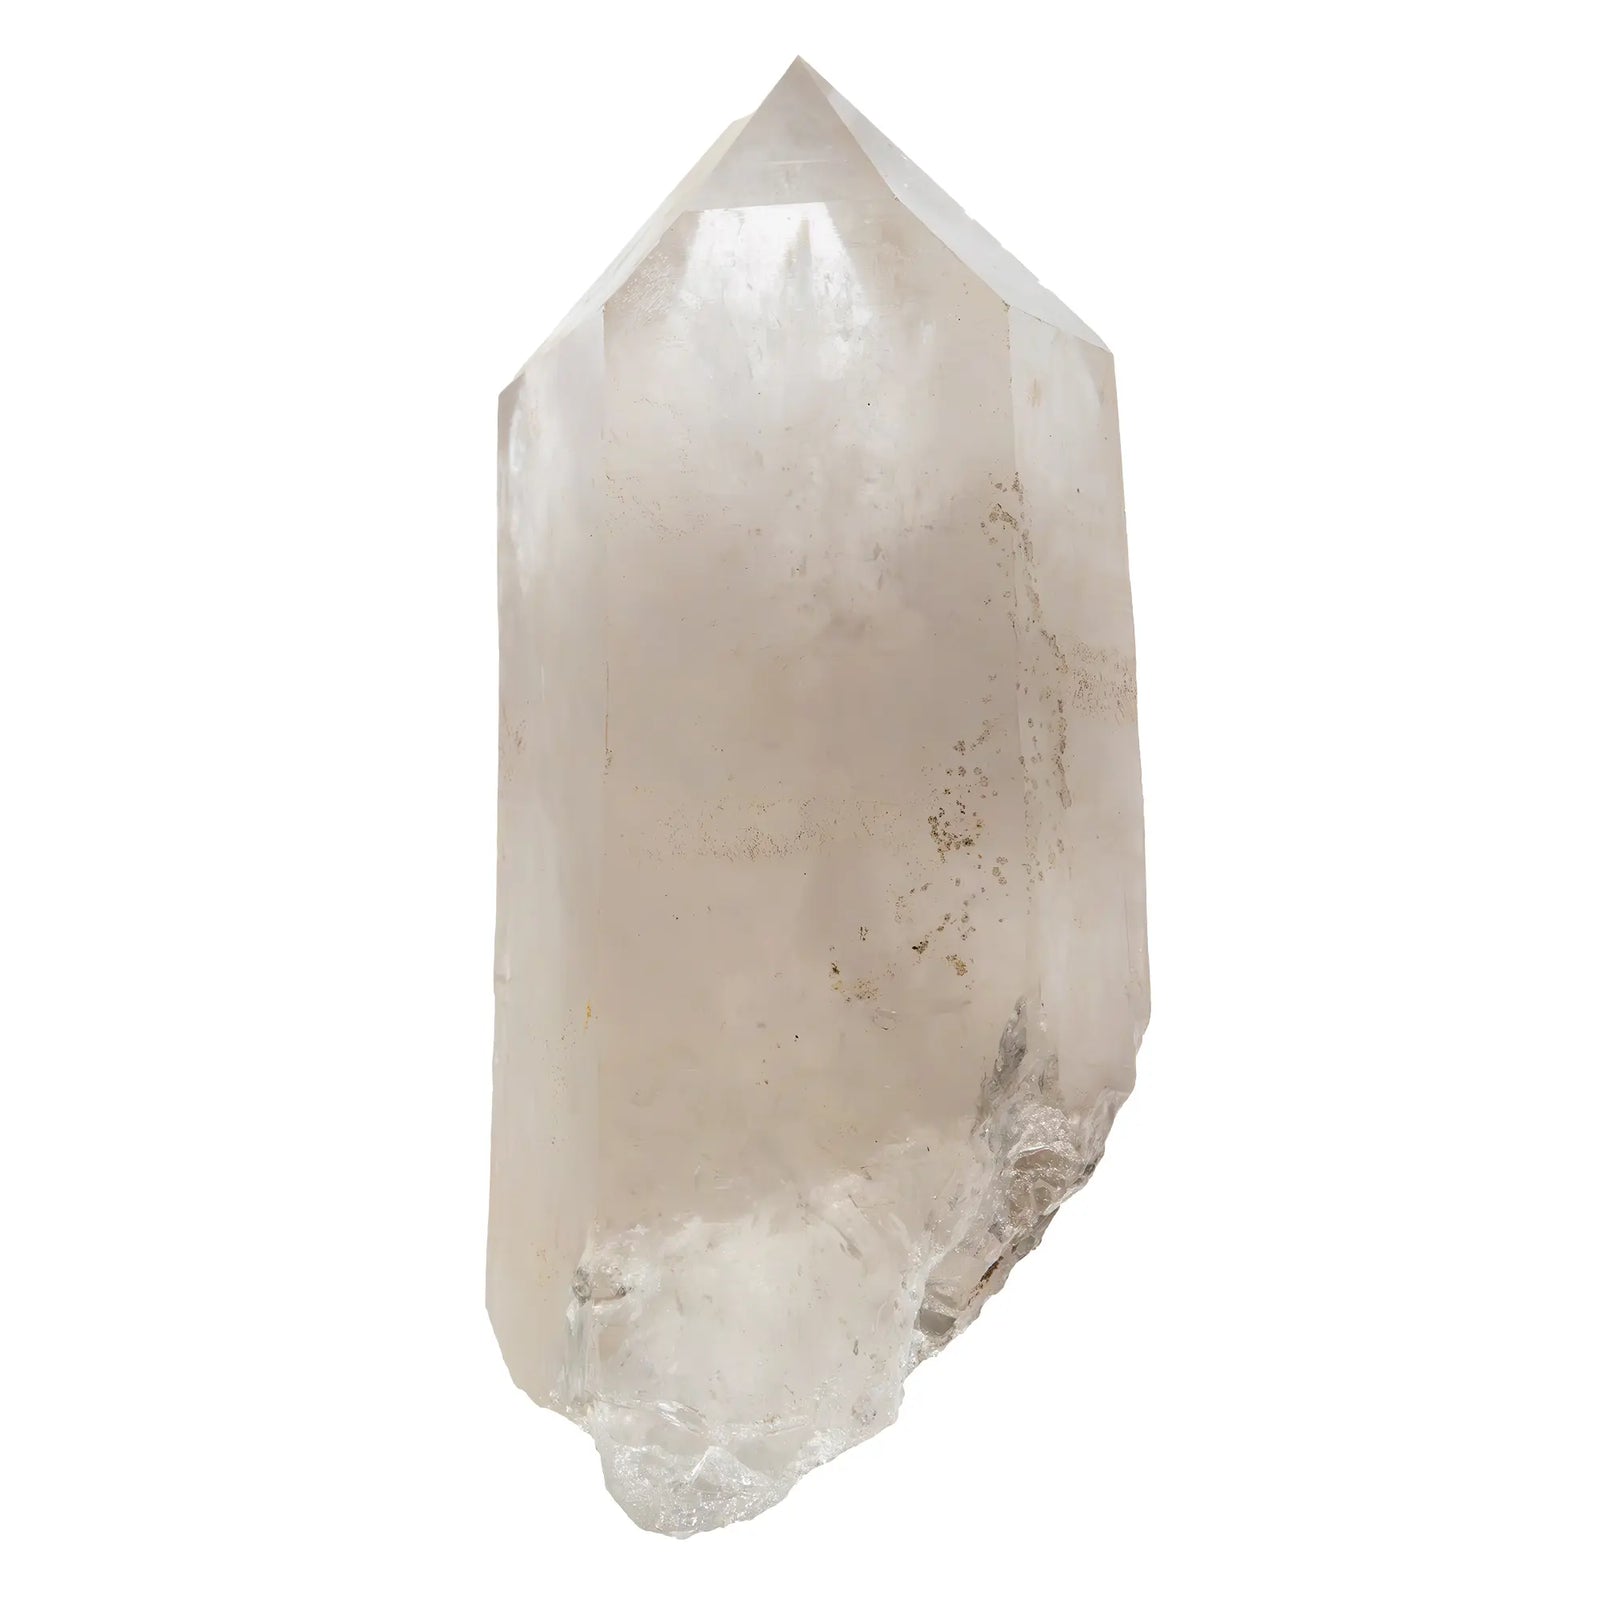 Cristal de roche - grand cristal brut - 2.08kg - CRISTAL SOURCES